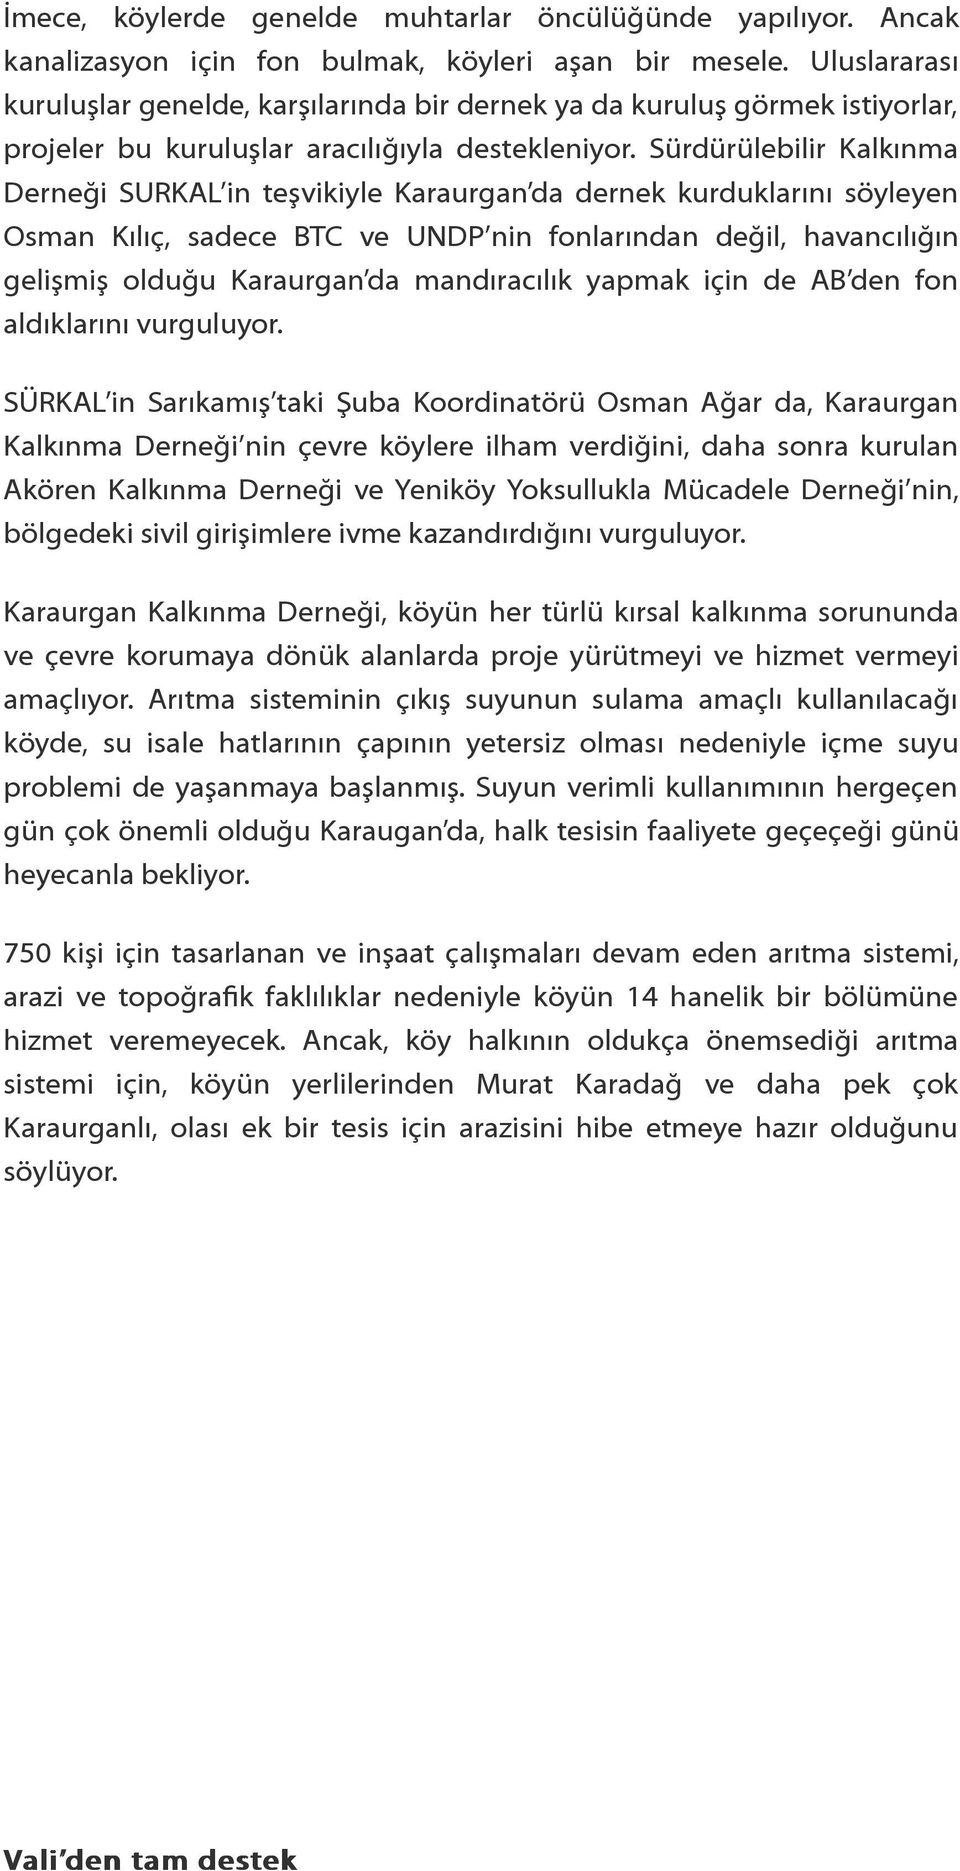 Sürdürülebilir Kalkınma Derneği SURKAL in teşvikiyle Karaurgan da dernek kurduklarını söyleyen Osman Kılıç, sadece BTC ve UNDP nin fonlarından değil, havancılığın gelişmiş olduğu Karaurgan da